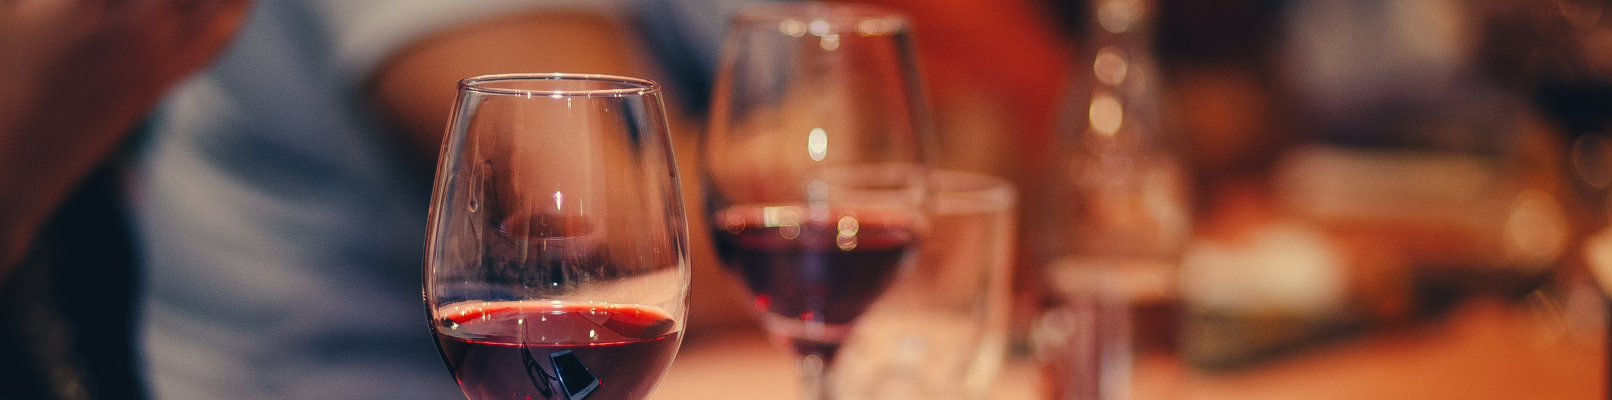 FAQ про вино: все, що треба знати та вміти